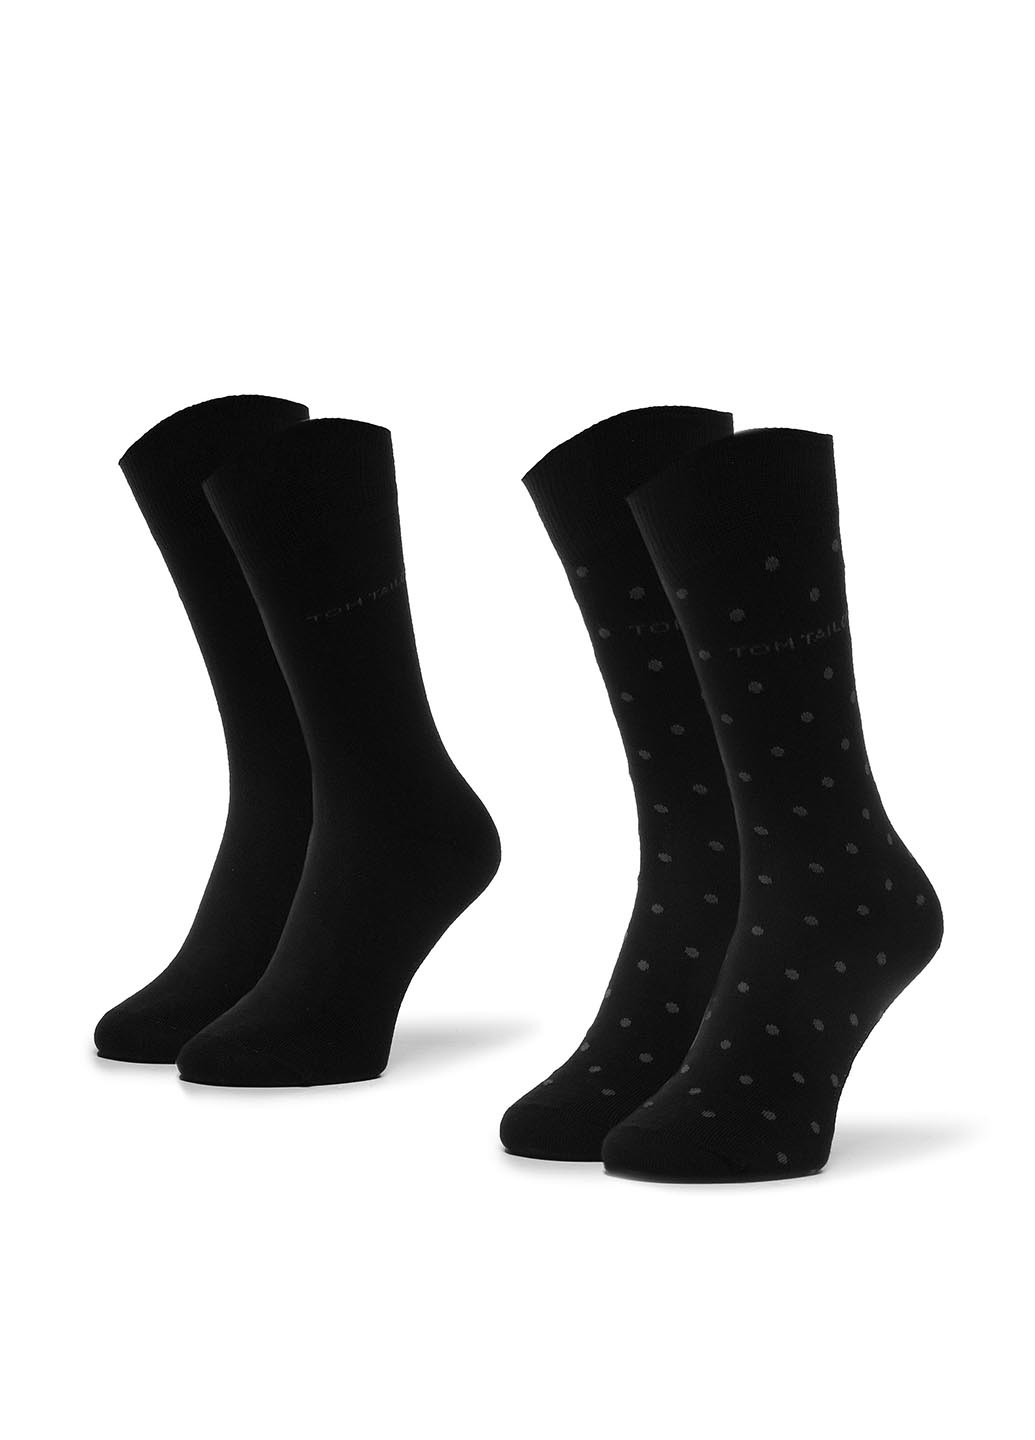 Шкарпетки чоловічі Tom Tailor 90188C 39-42 BLACK Tom Tailor 90188c 39-42 black горошок чорні повсякденні